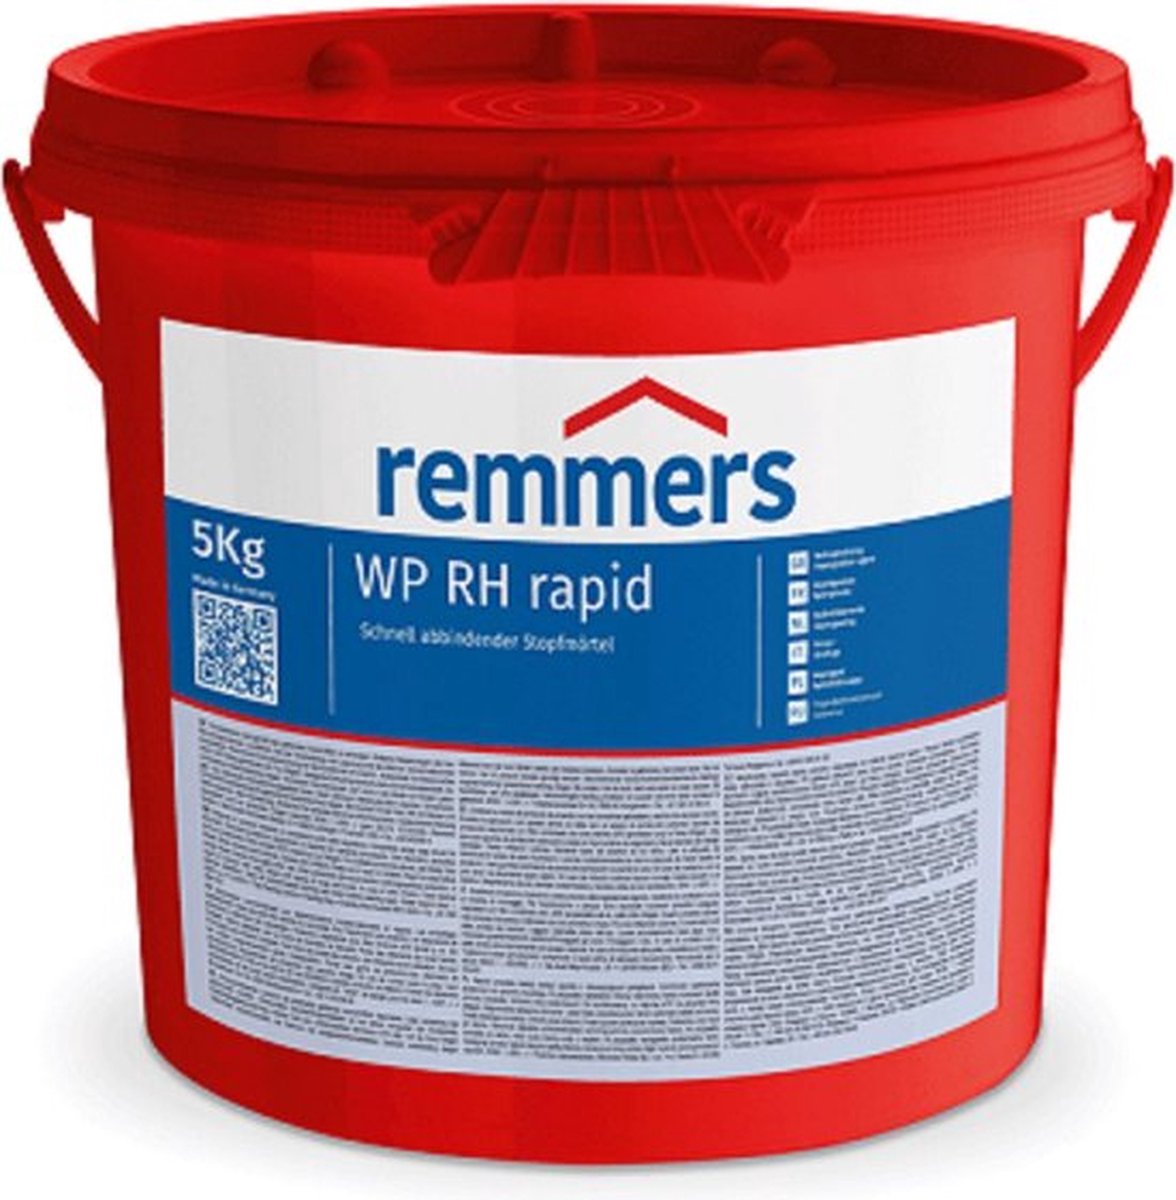 Remmers WP RH Rapid cement 5 kg - Remmers